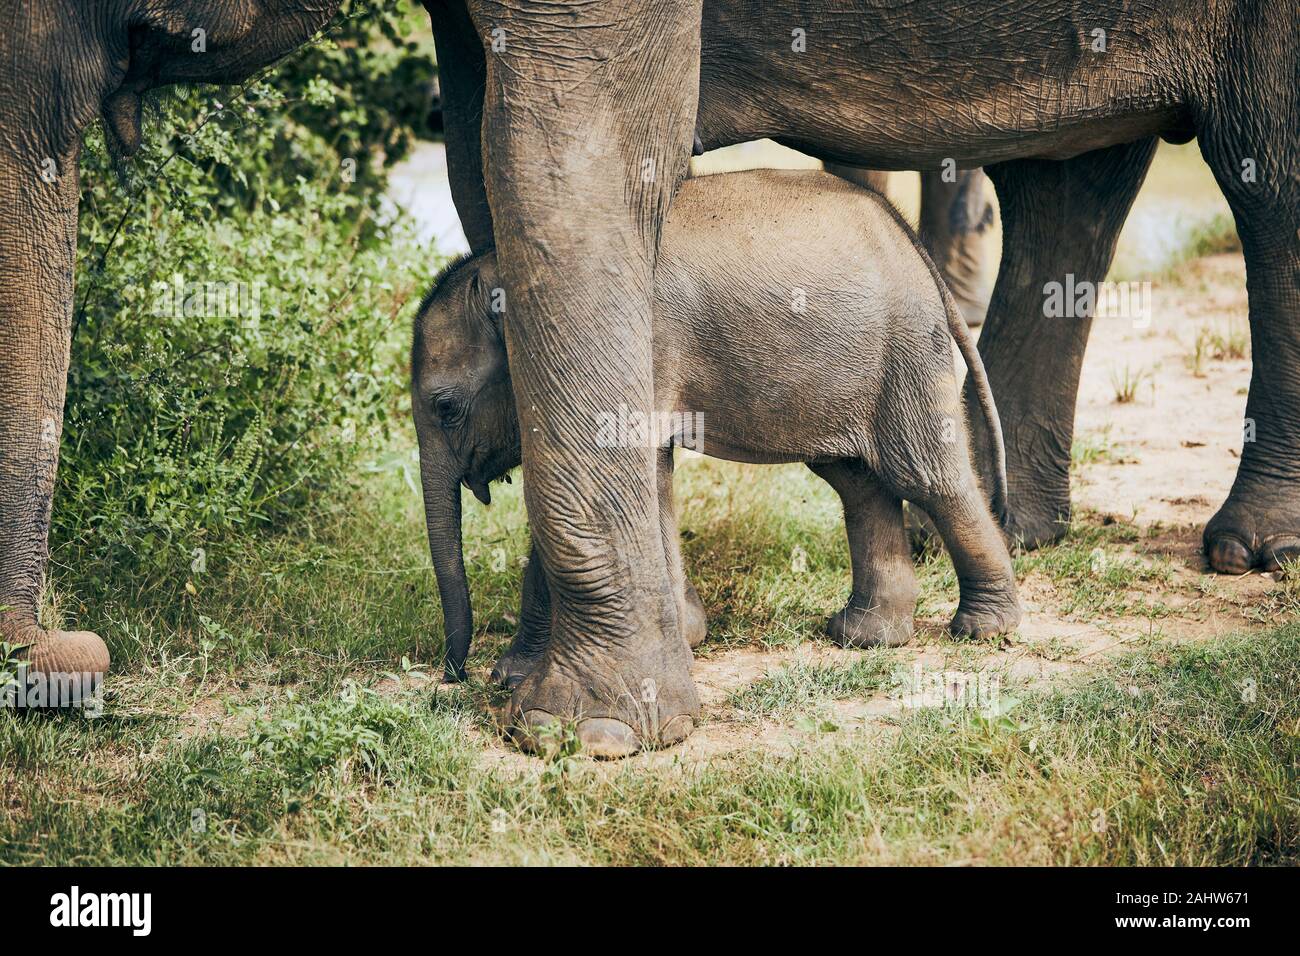 Madre elefante con el bebé. La fauna silvestre en Sri Lanka. Foto de stock